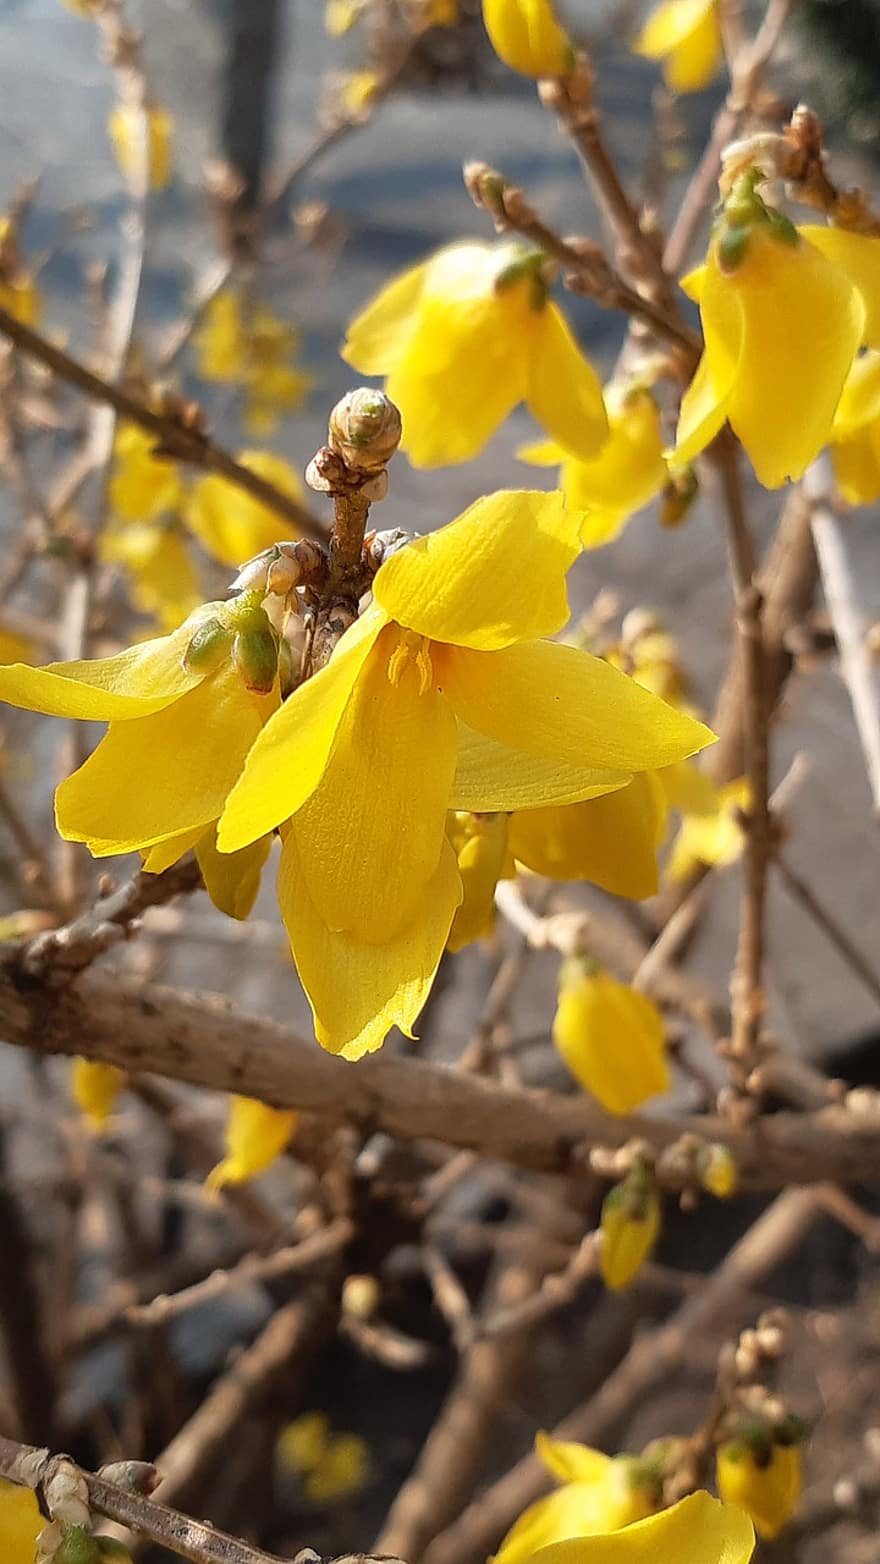 θάμνος με κίτρινα φυλλοειδή άνθη, λουλούδια, κλαδί, άνοιξη, κίτρινα άνθη, πέταλα, ανθίζω, φυτό, κίτρινος, γκρο πλαν, λουλούδι